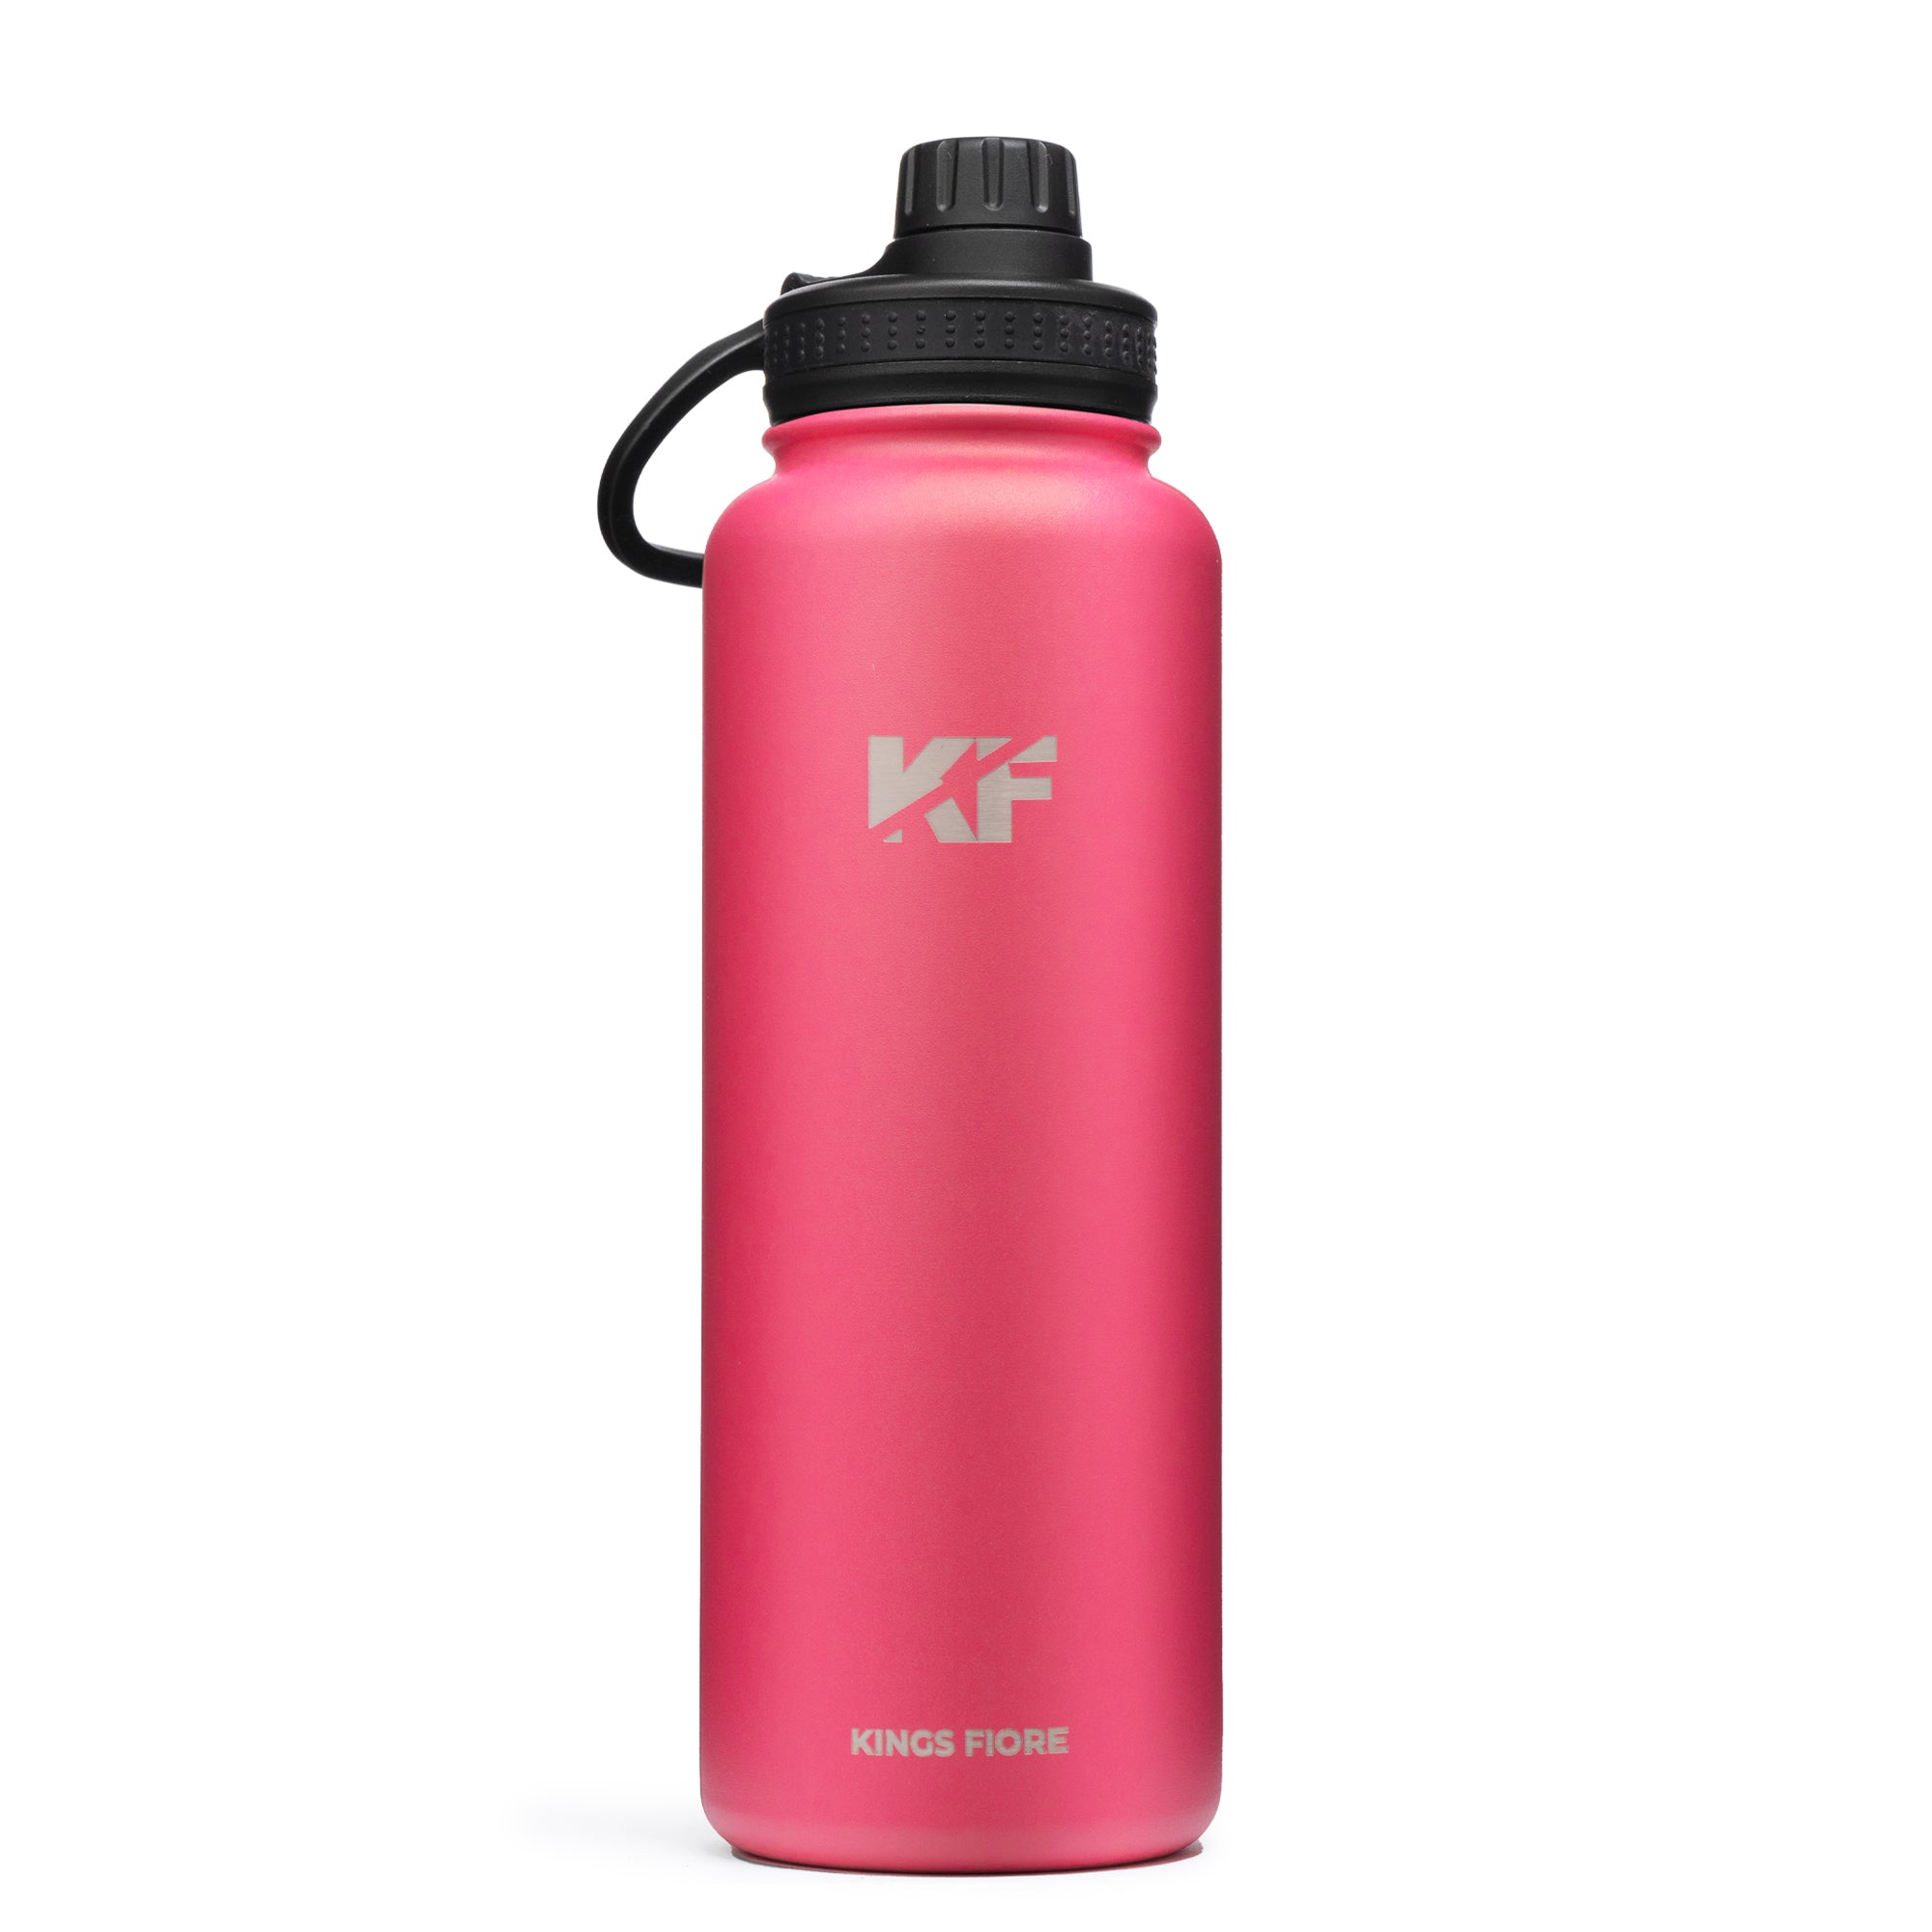 Kings Fiore Sports Water bottle - 40 OZ,(rose)